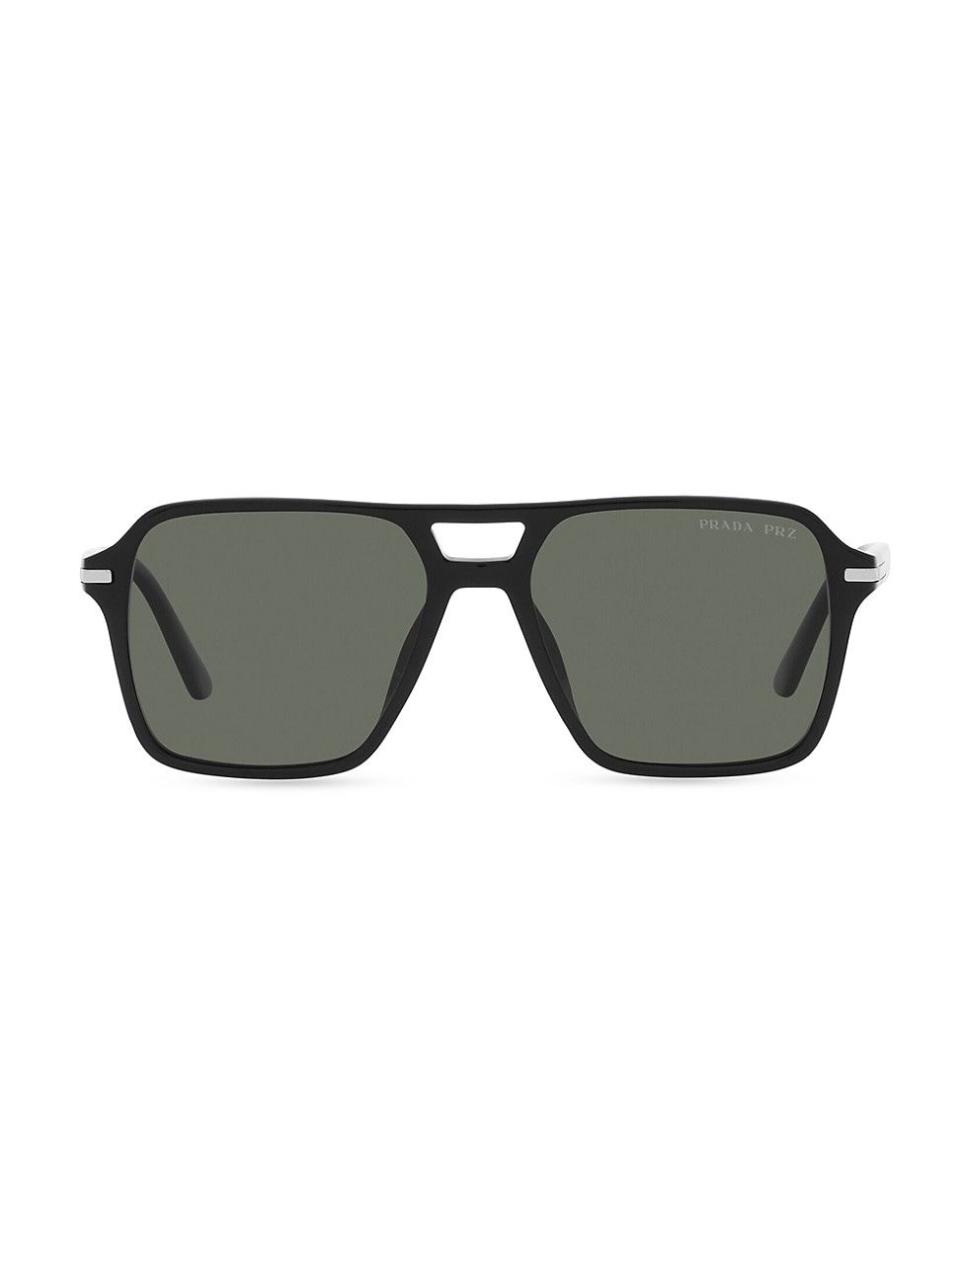 Men's 20YSF Pilot Sunglasses